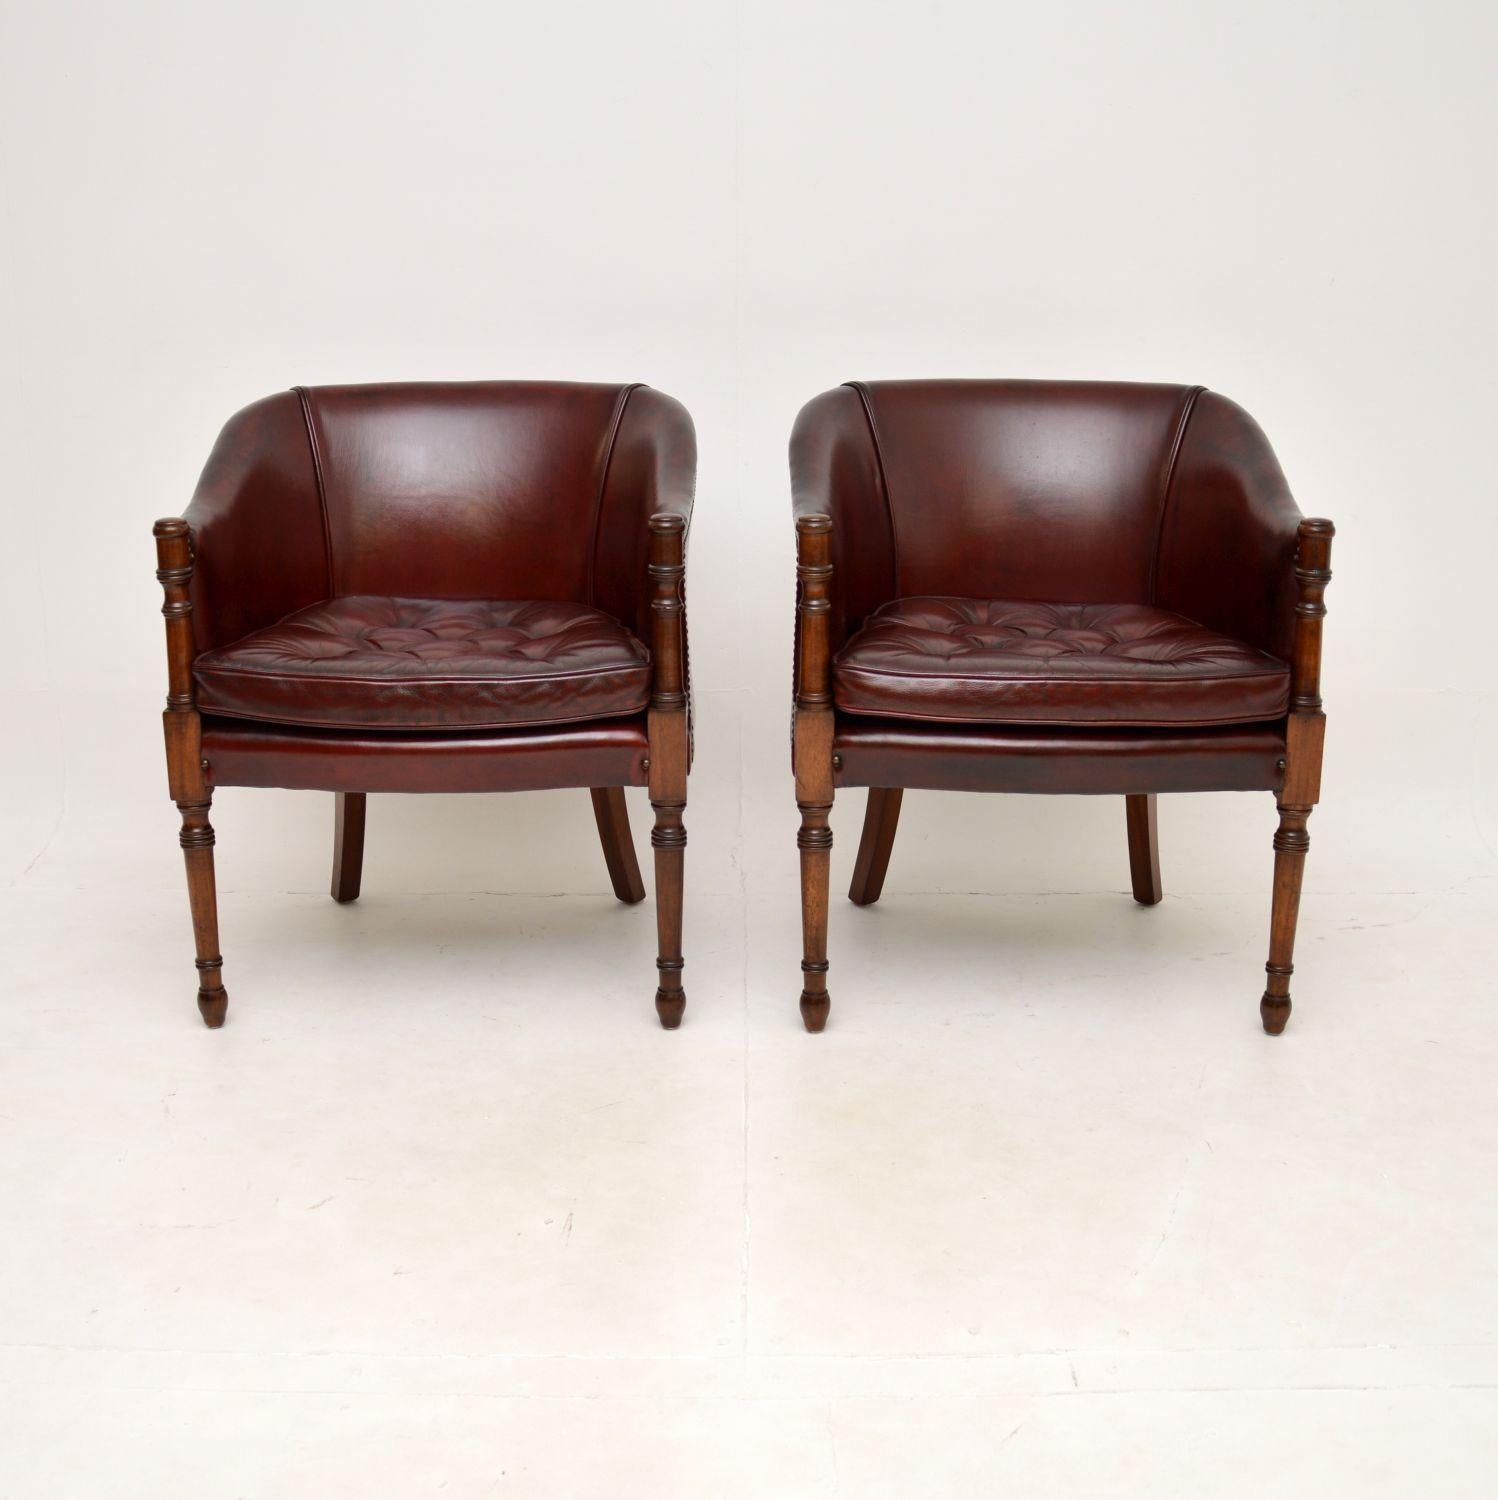 Une paire de fauteuils anciens en cuir de style géorgien, très élégants et extrêmement bien faits. Fabriqués en Angleterre, ils datent des années 1950.

La qualité est superbe, ils sont très confortables et magnifiquement conçus. Le cuir bordeaux a